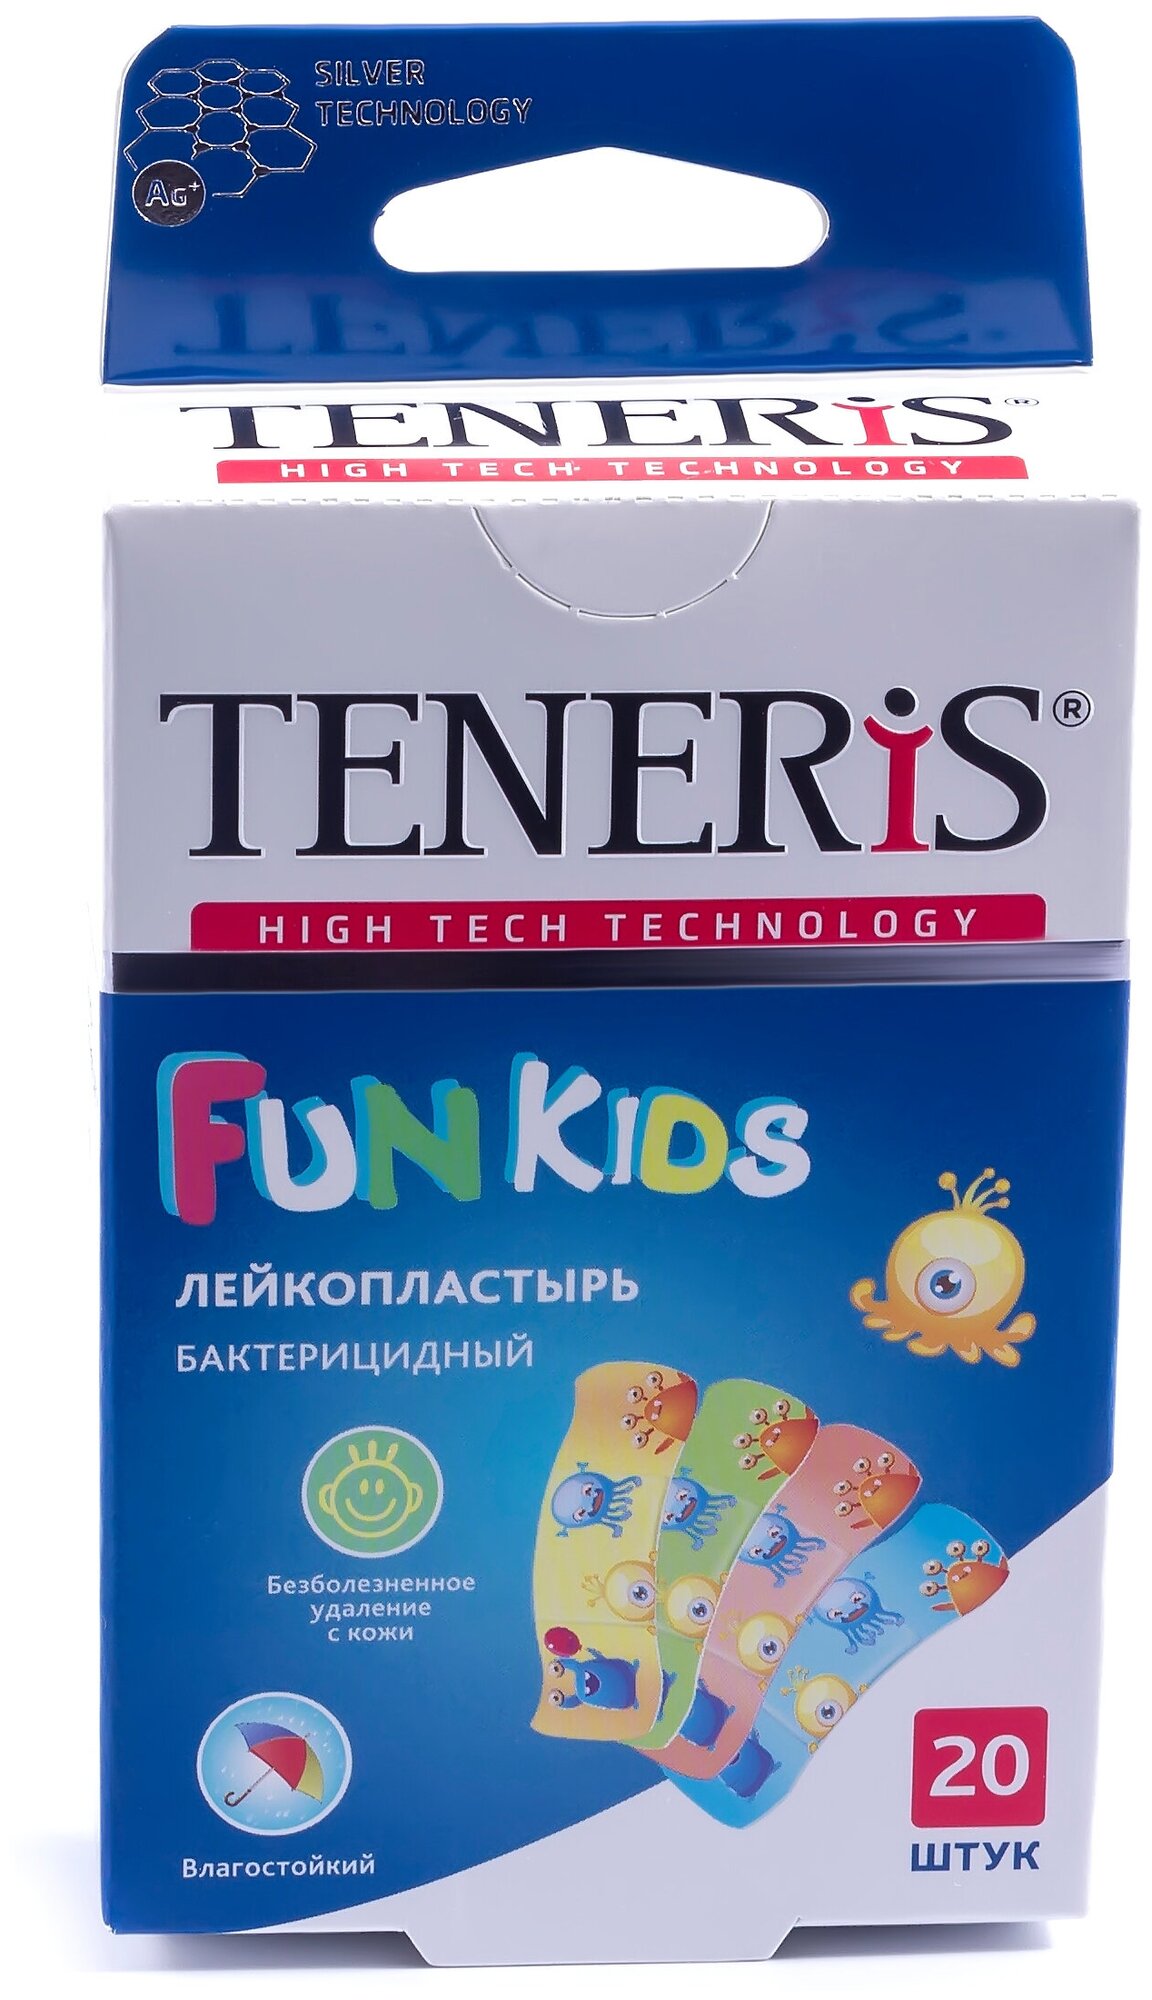 Пластырь TENERIS FUN KIDS Лейкопластырь бактерицидный с ионами серебра на полимерной основе с рисунками 20 шт